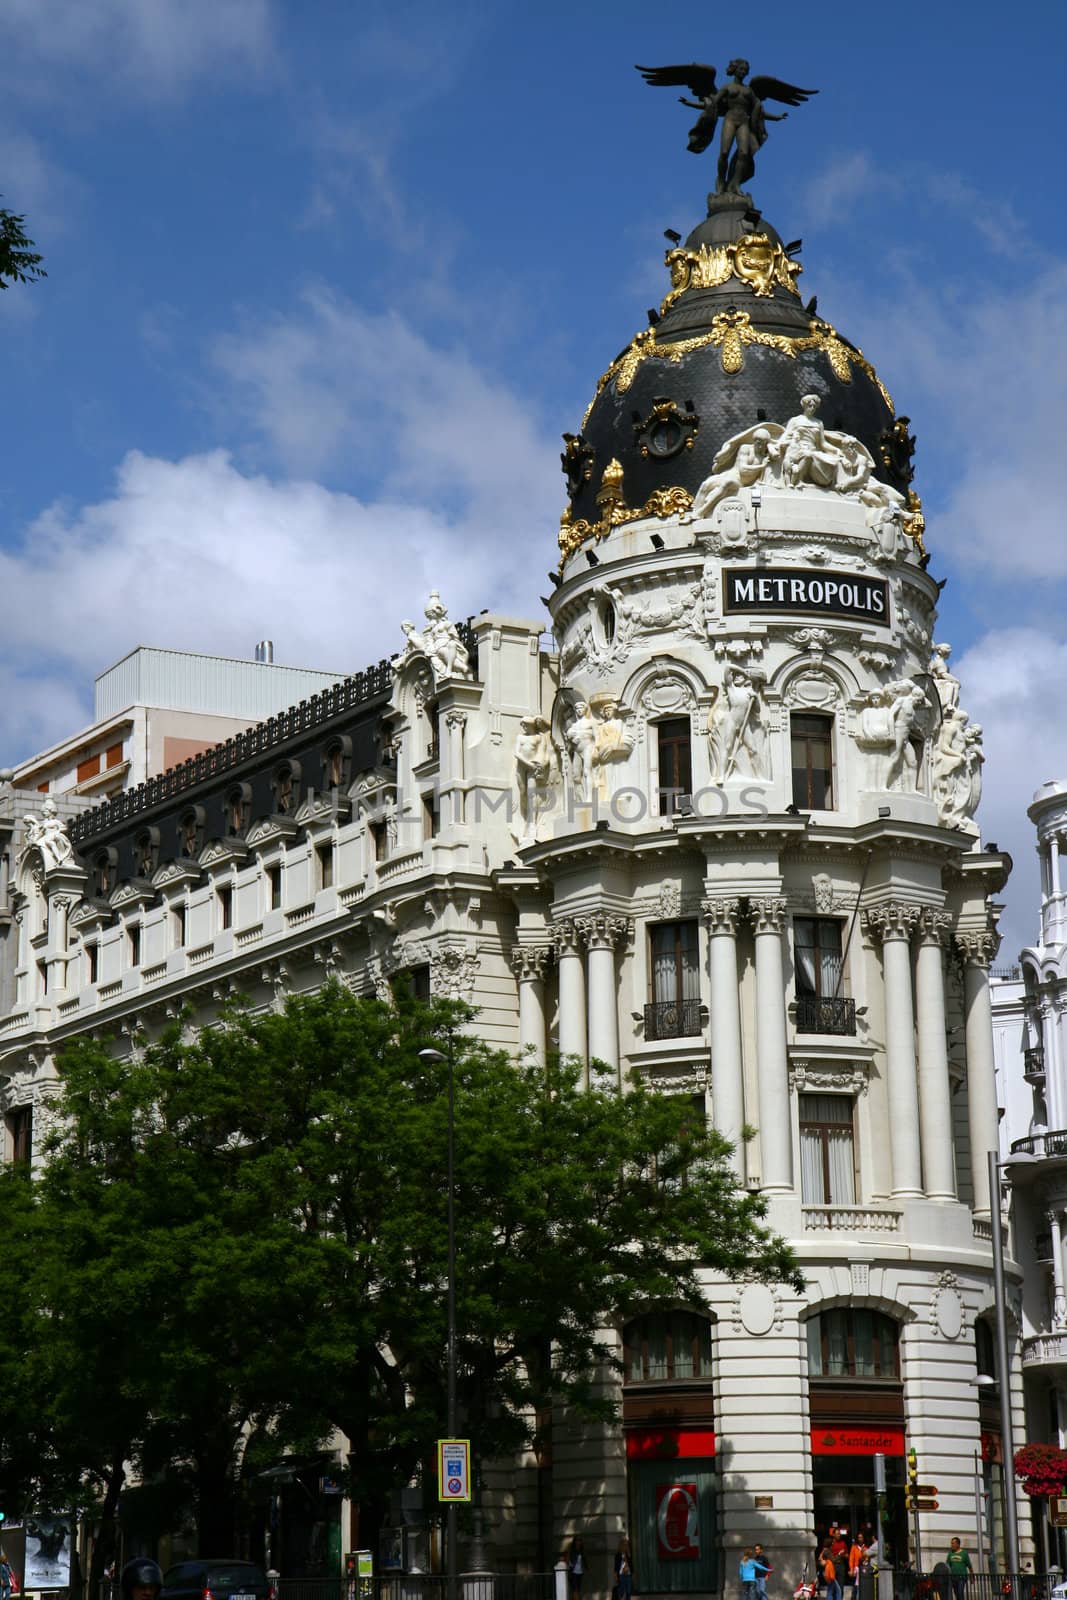 Metropolis Building in Madrid, Spain by mrfocus